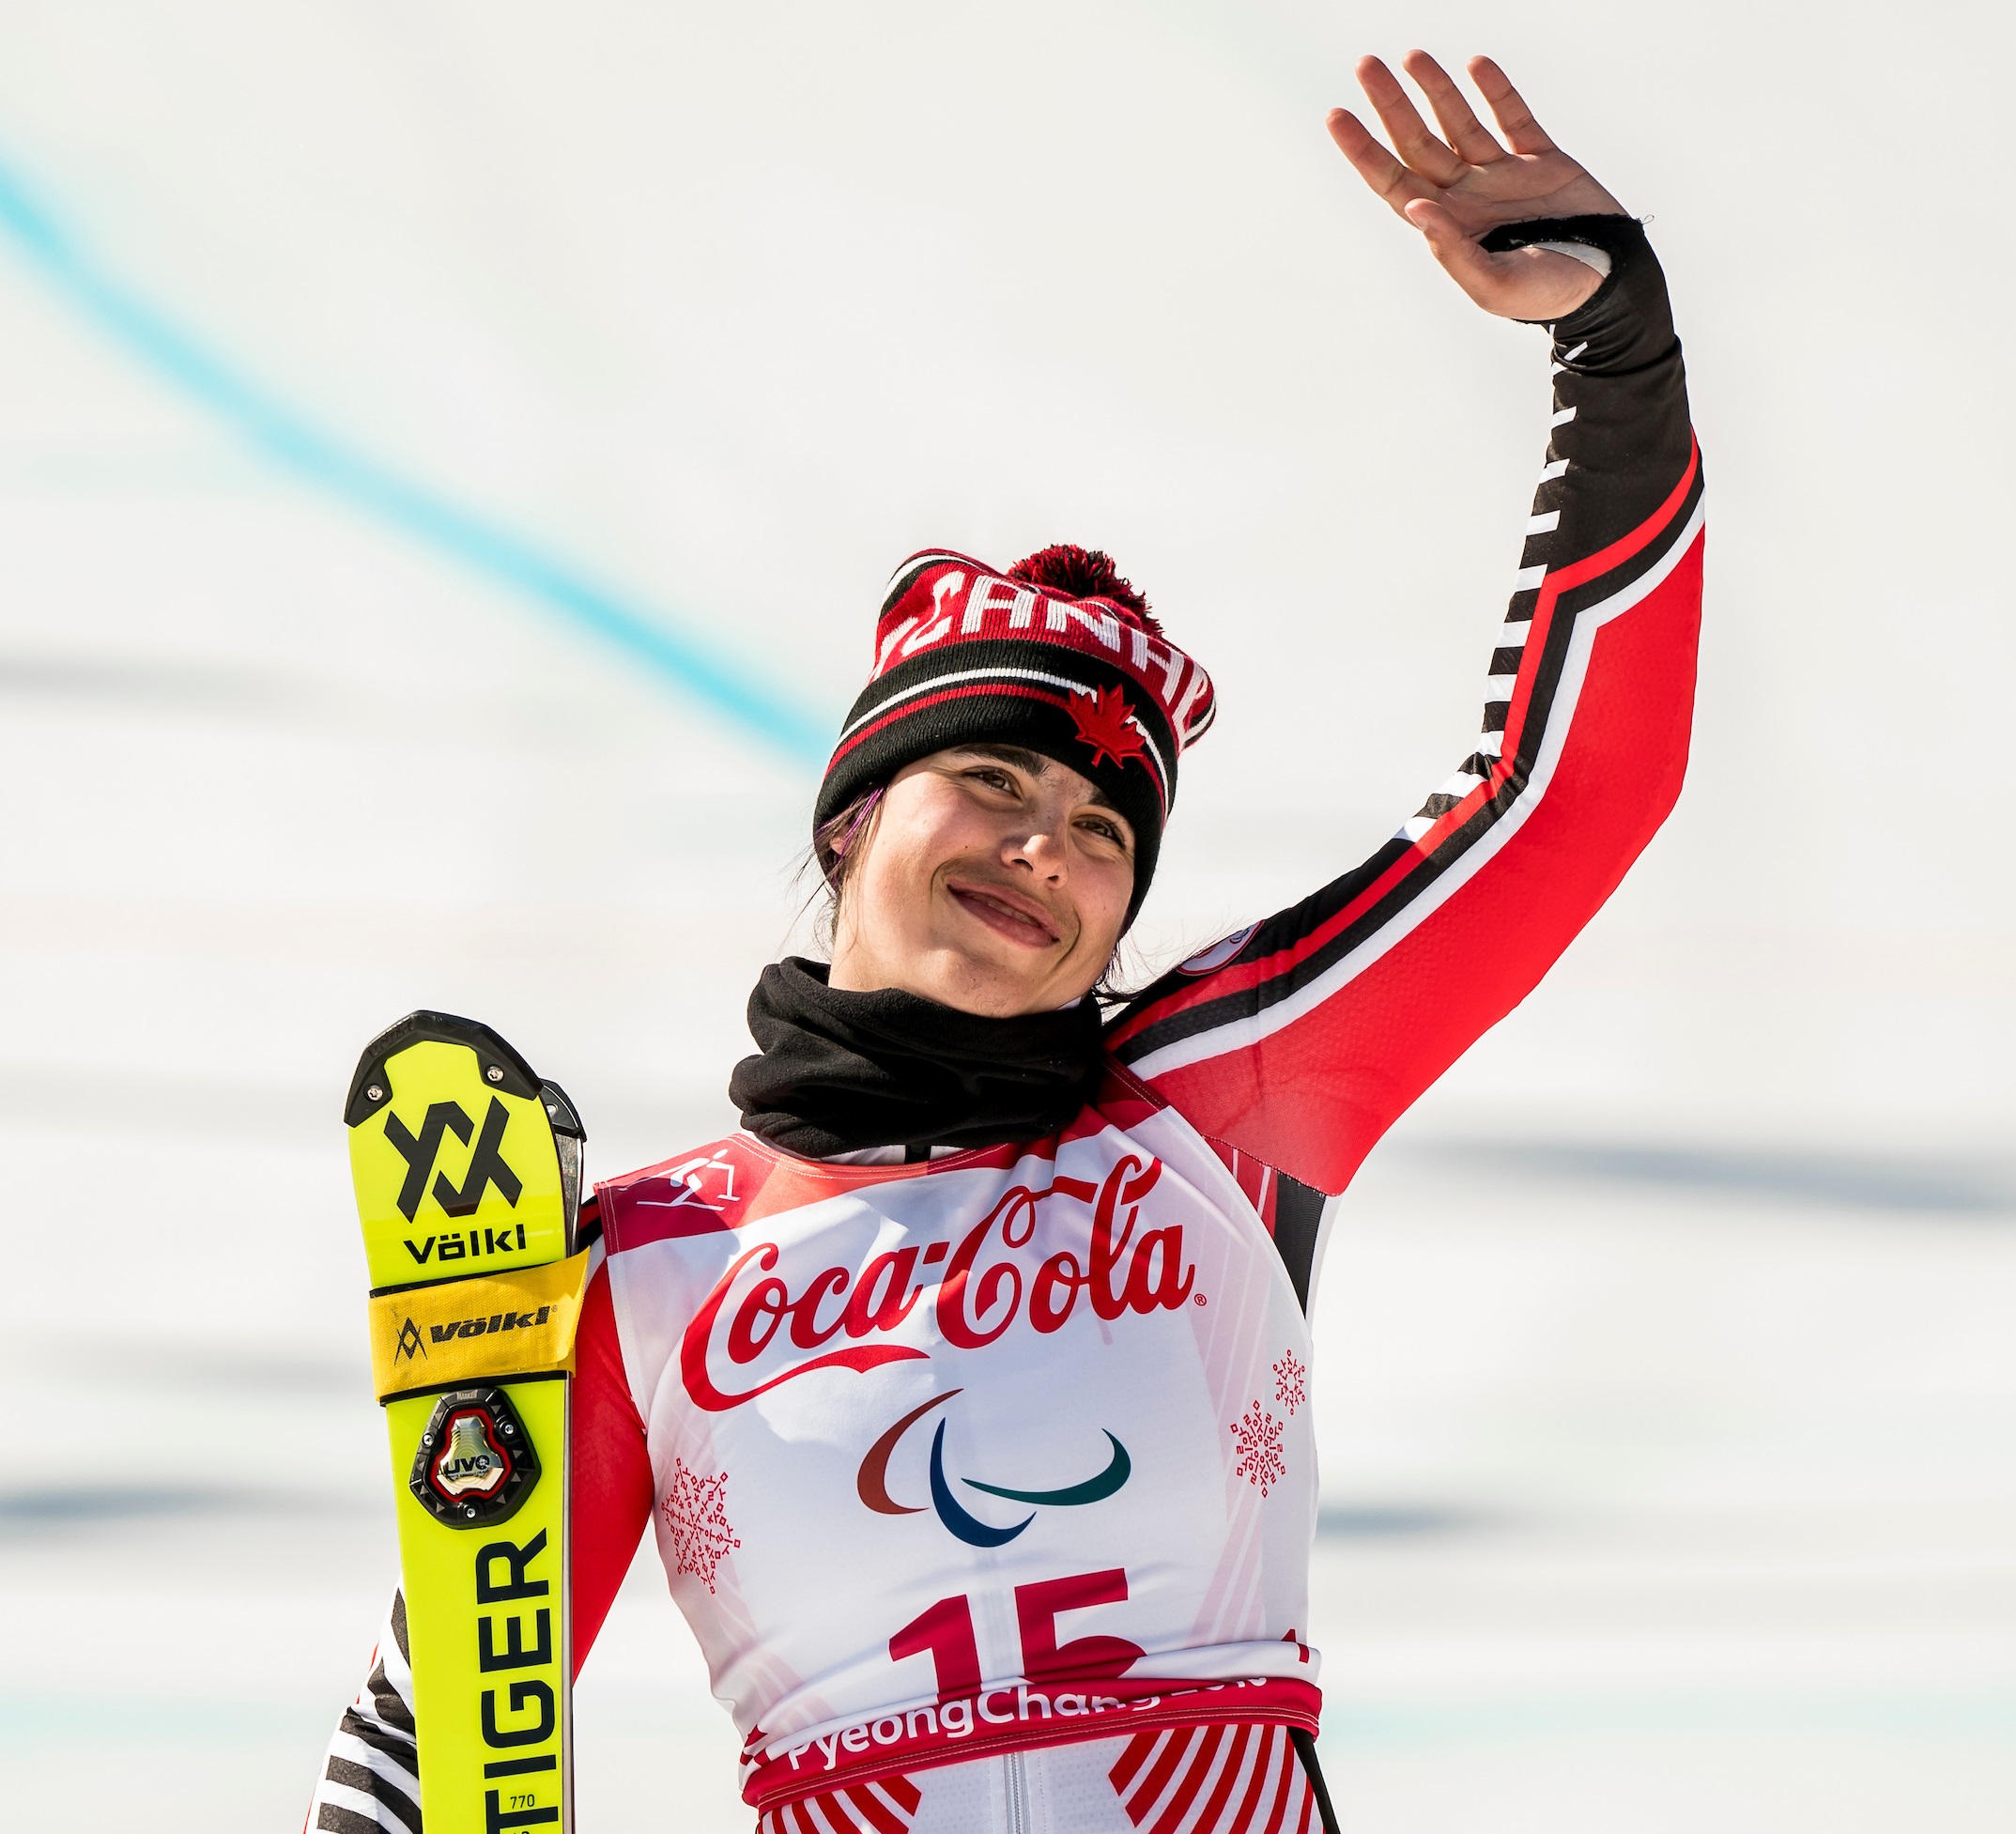 Alana Ramsay waving to crowd at PyeongChang 2018 Paralympic Winter Games after winning bronze